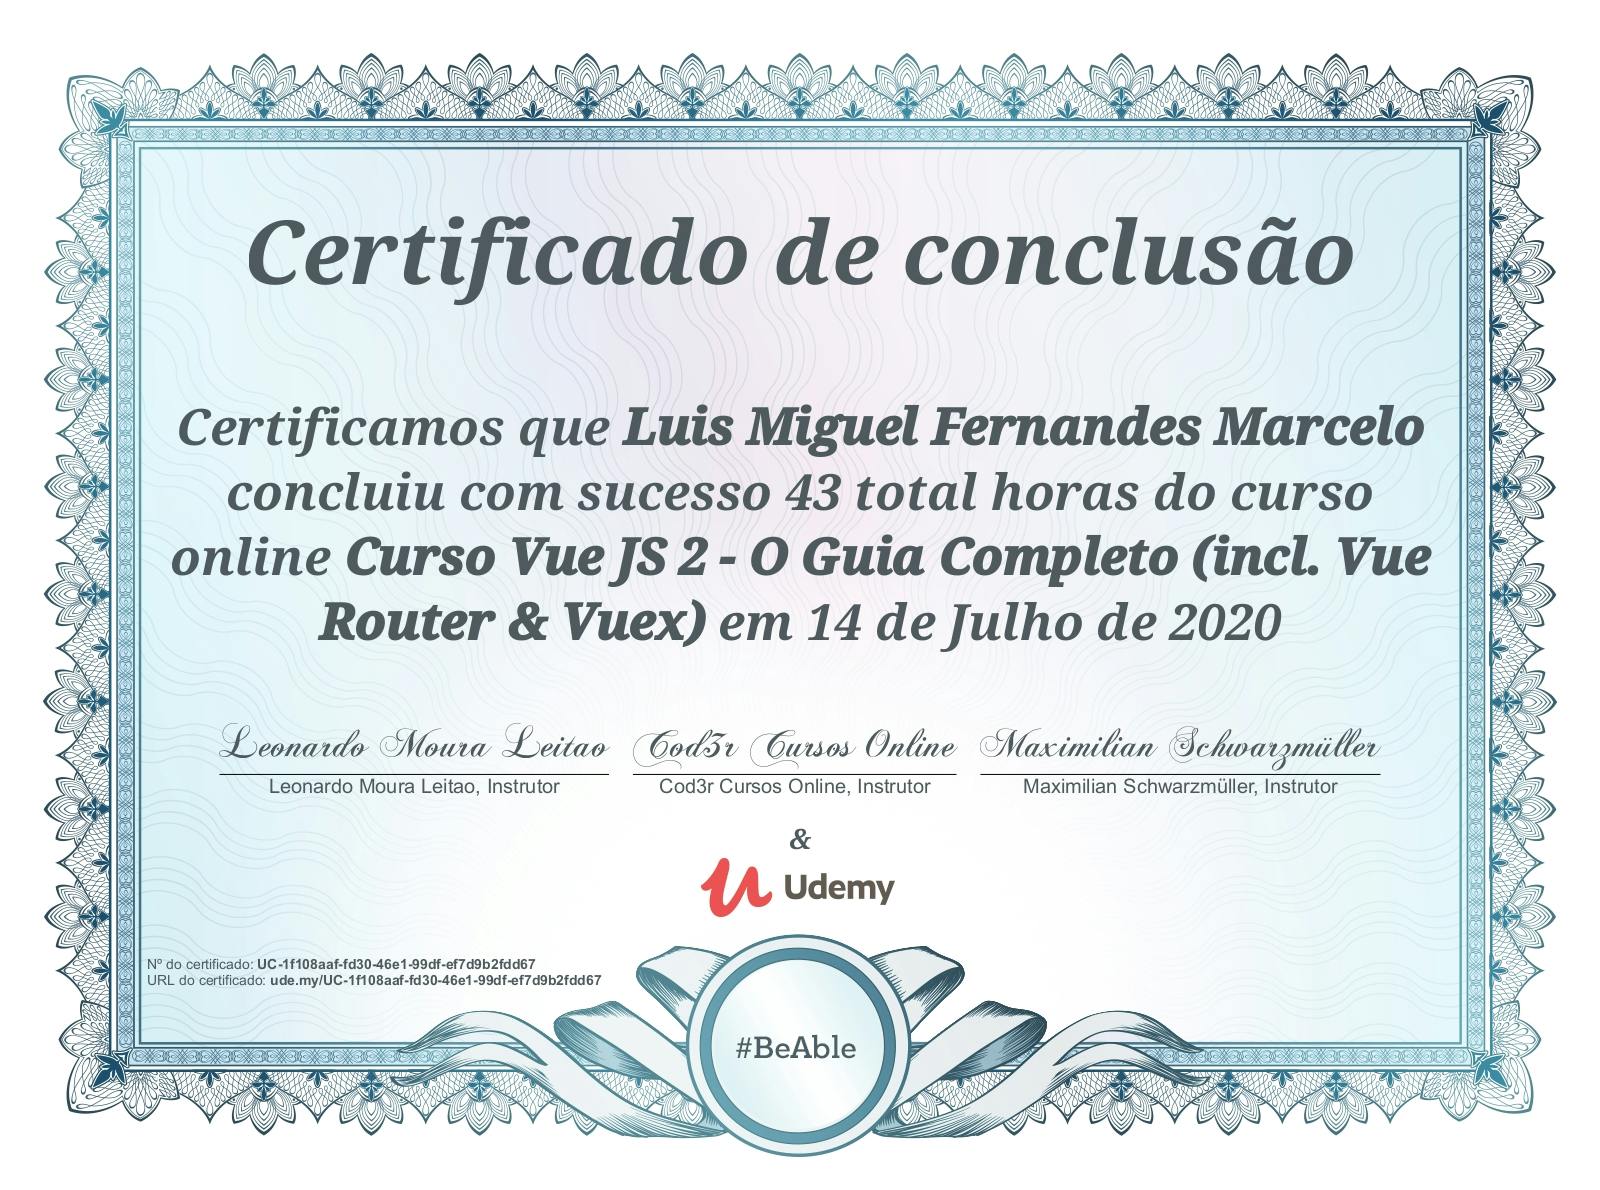 Certificado de conclusão do curso "Curso Vue JS 2 - O Guia Completo (Incl. Vue Router & Vuex)".